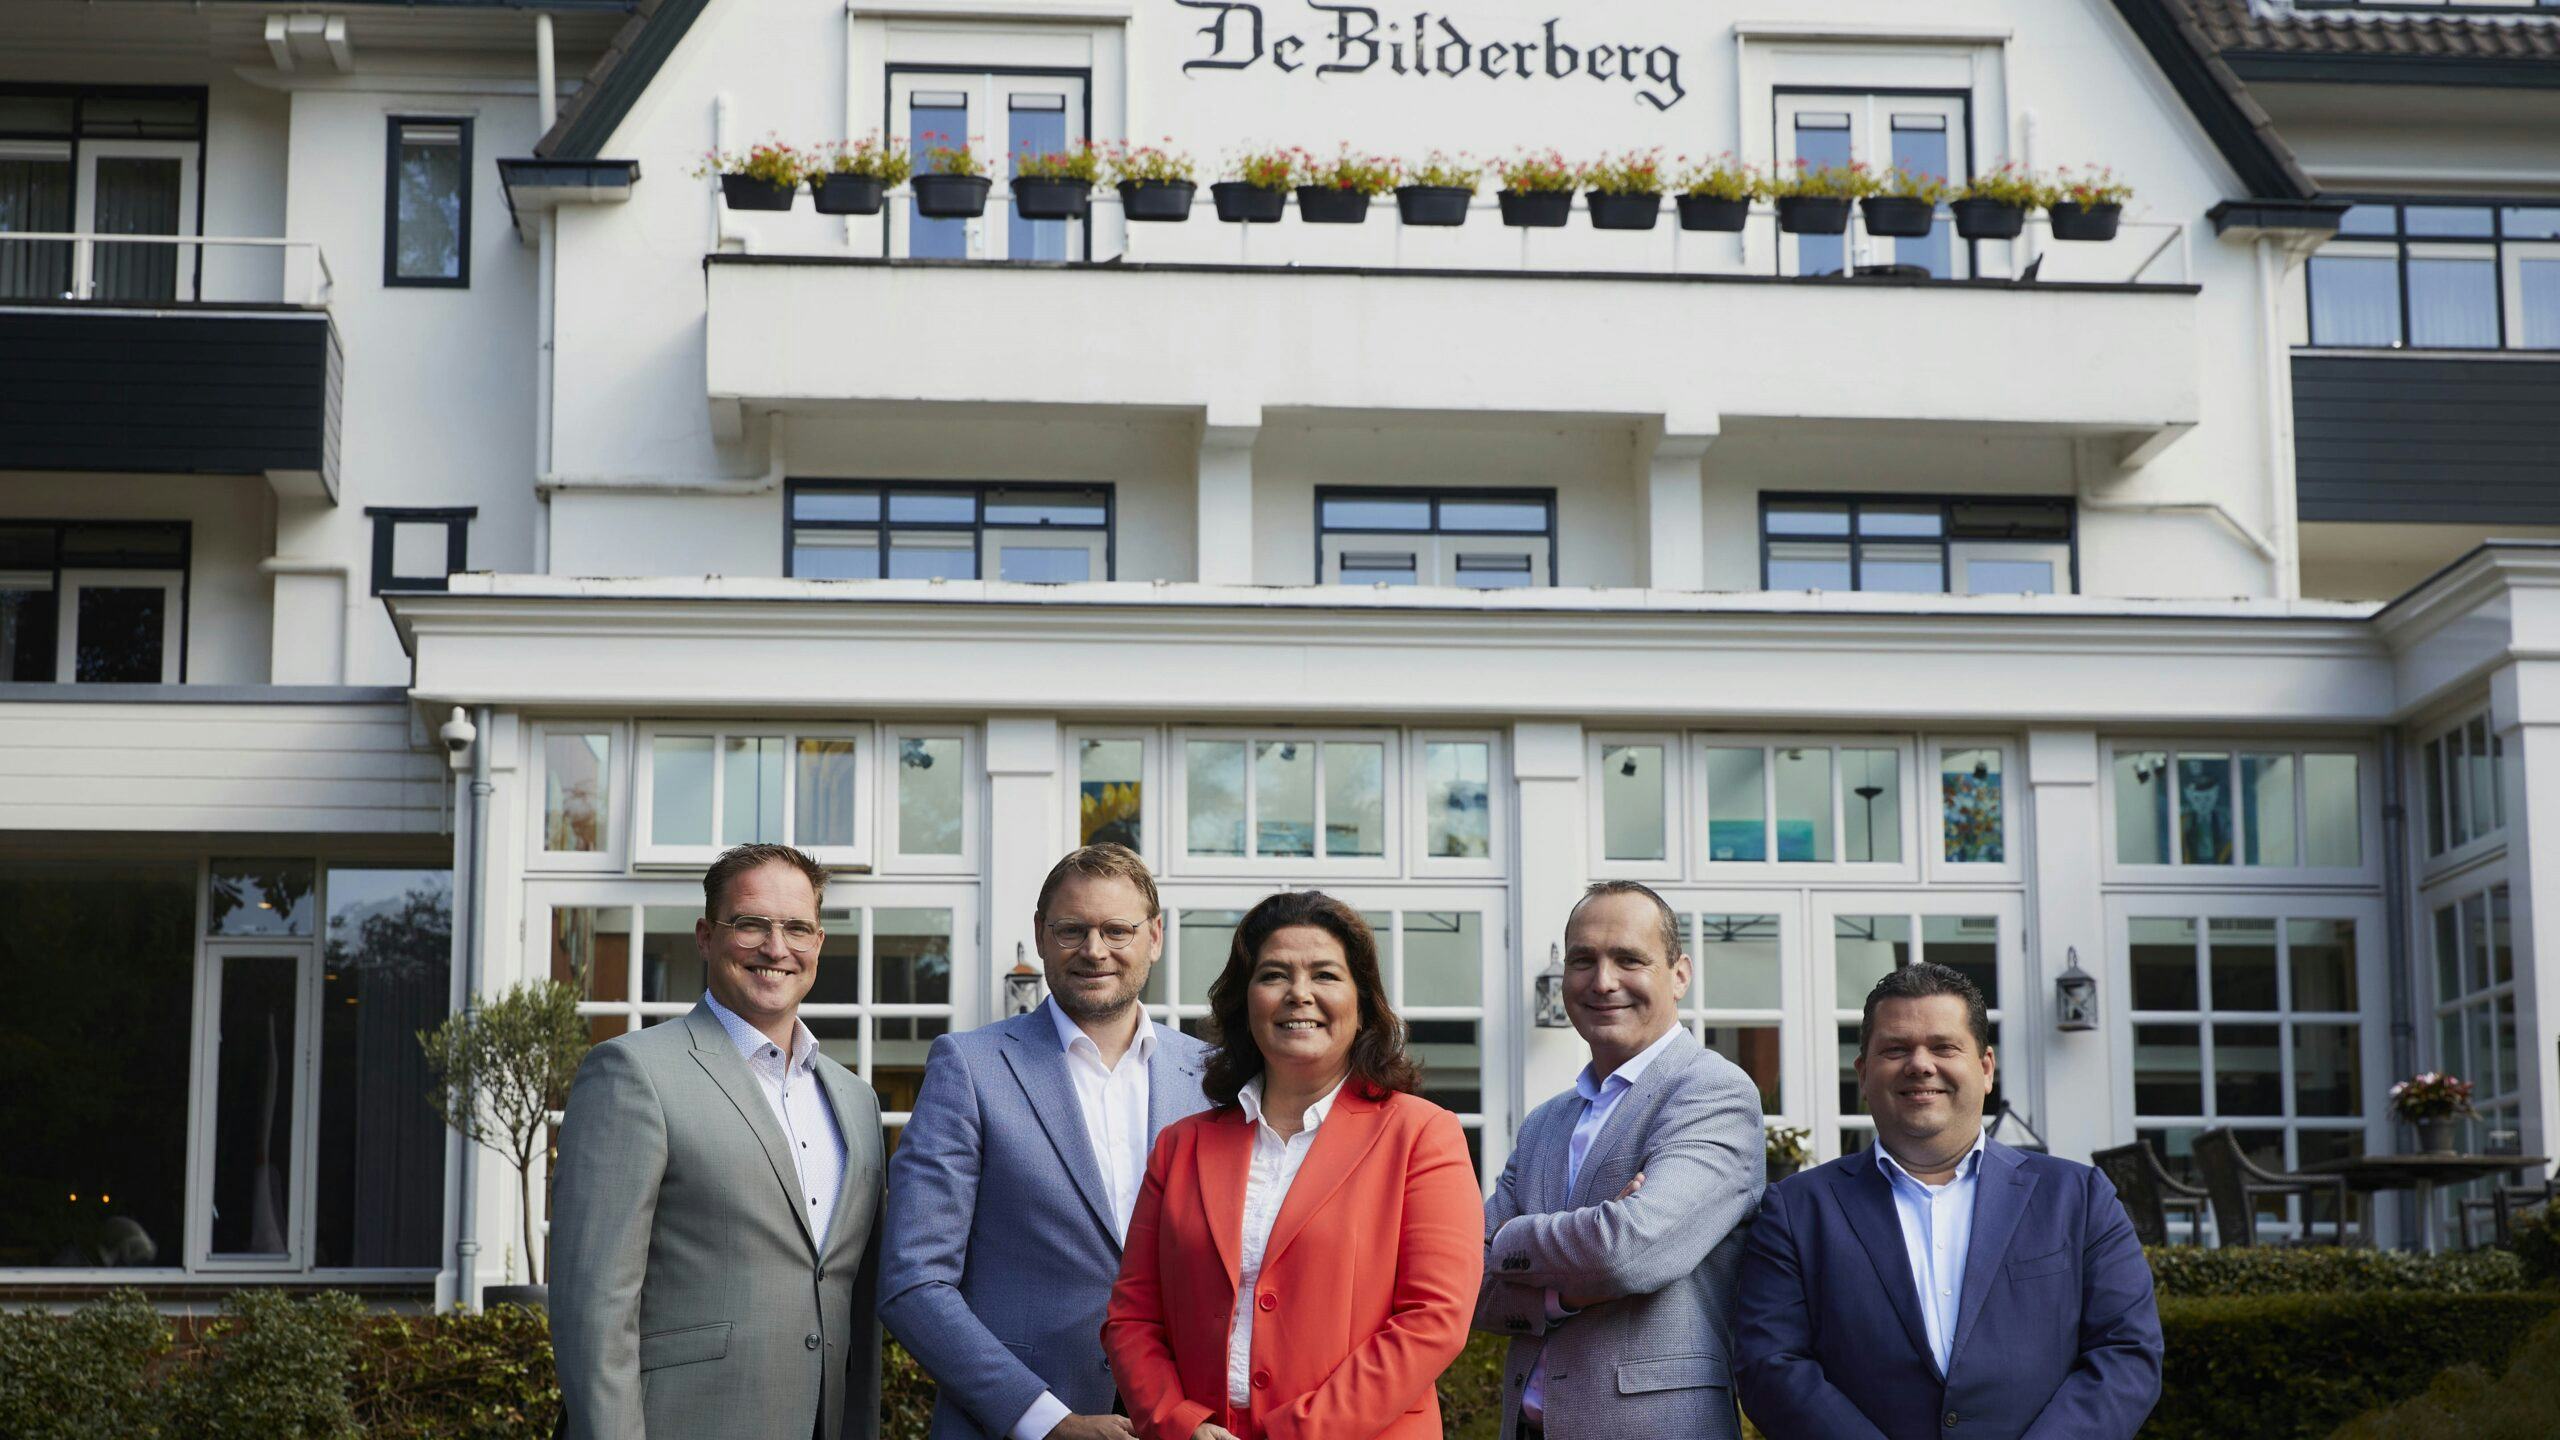 Van links naar rechts: Tim Gillissen (Kasteel Vaalsbroek), Ernst van der Waal (Director of Operations Bilderberg Hotels), MaryLoes Baur (Hotel De Bilderberg), Ronald Slomp (Garden Hotel) en Harro Menkhorst (Grand Hotel Wientjes).